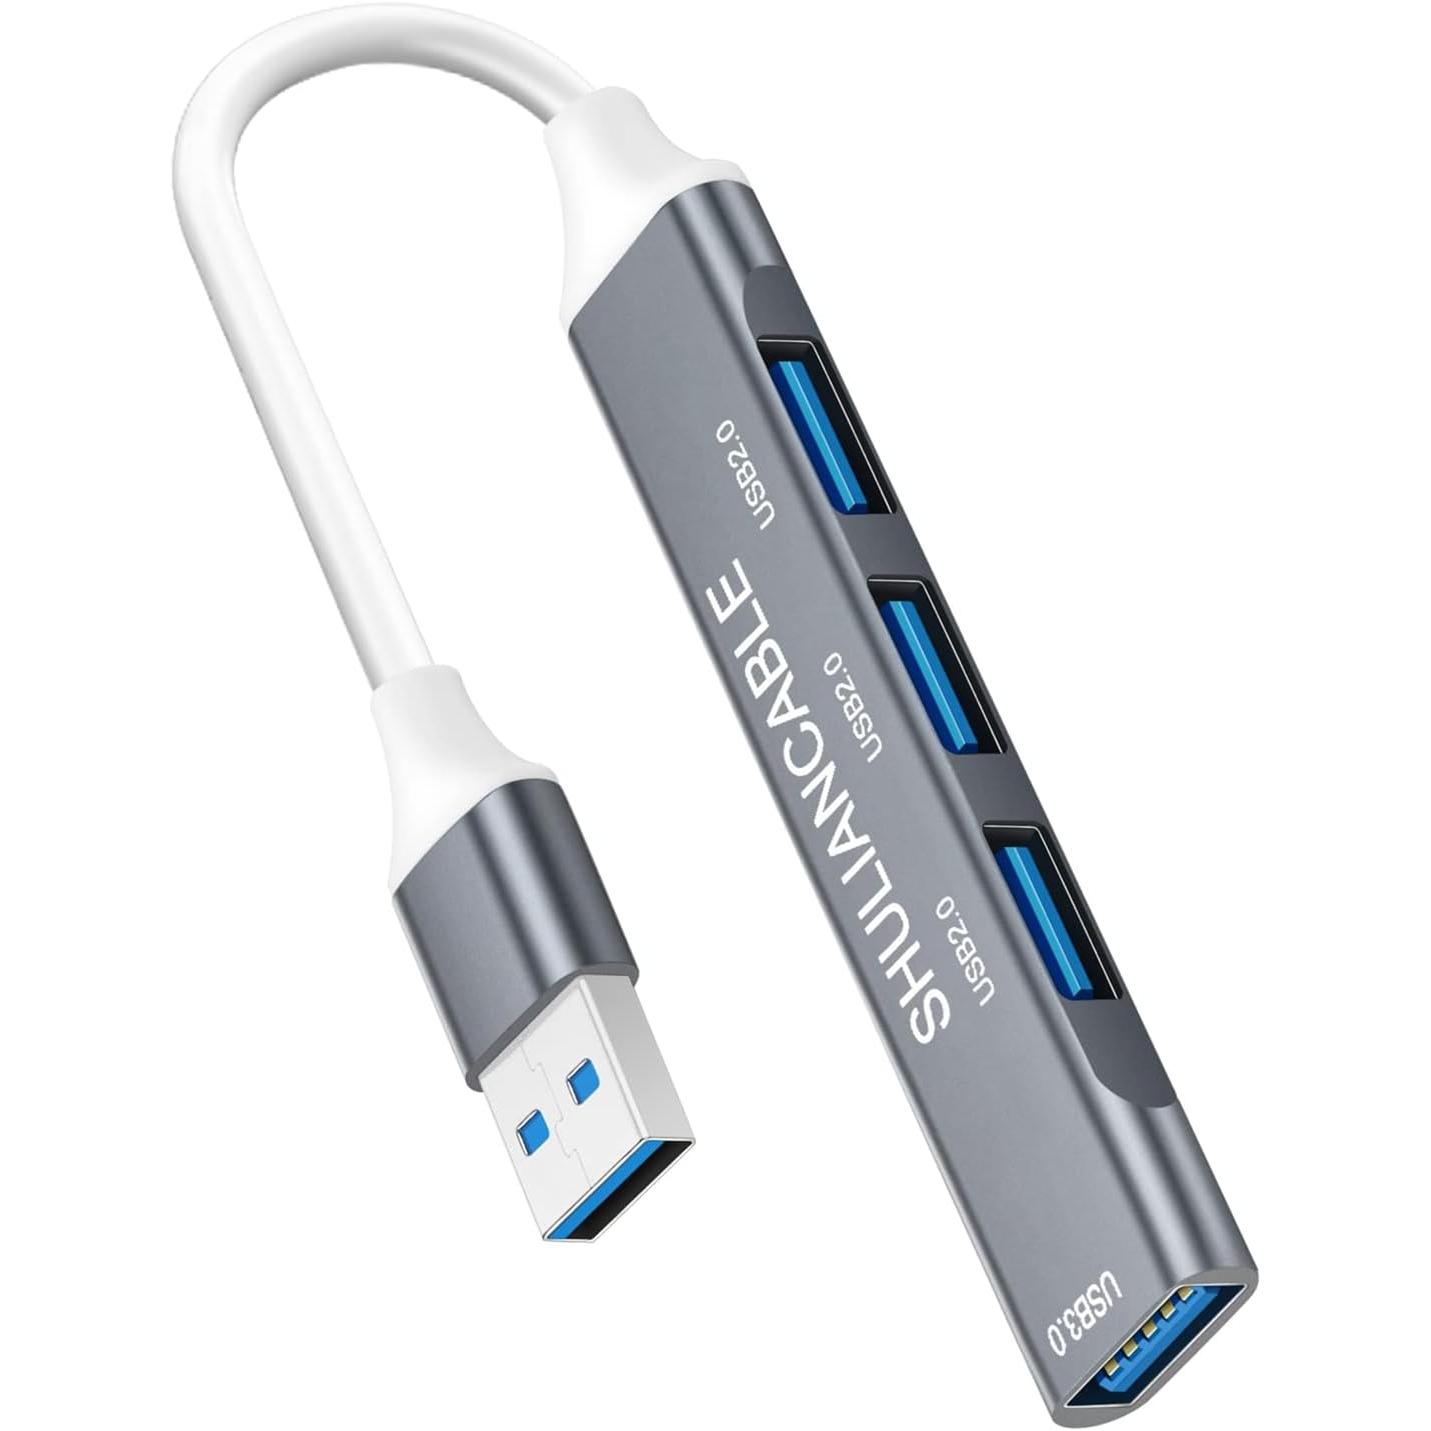  NIMASO Adaptador USB C a USB 3.0 [2 unidades